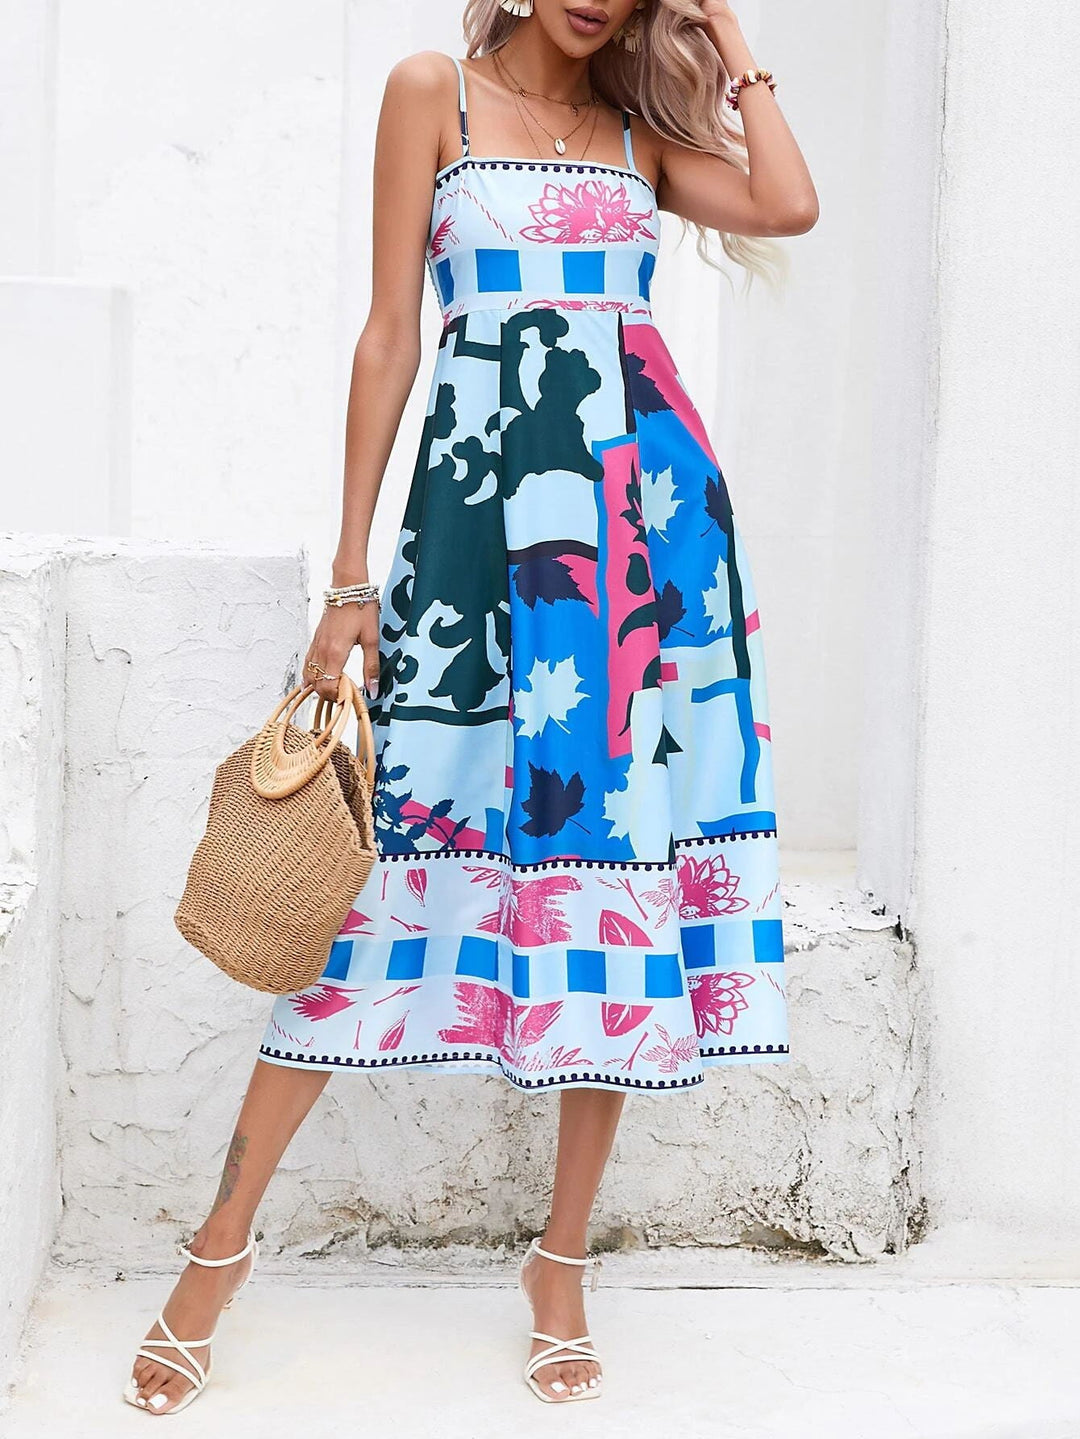 Maxi-jurk met patchwork: abstracte kleurrijke print